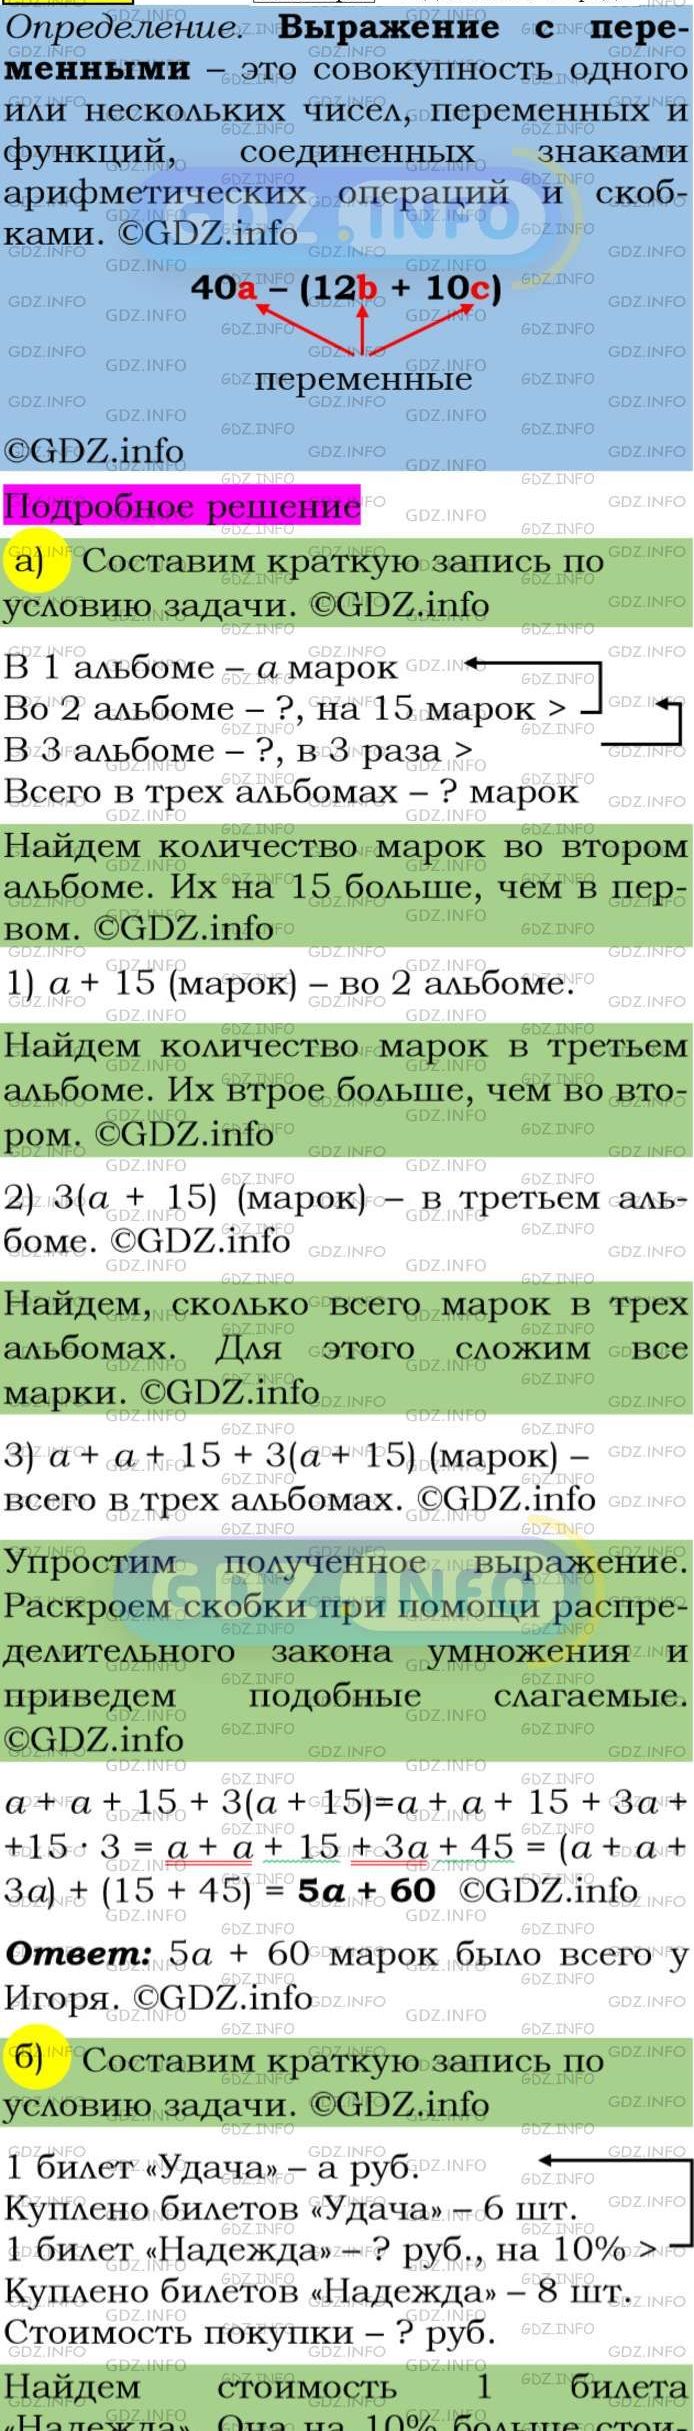 Фото подробного решения: Номер задания №126 из ГДЗ по Алгебре 7 класс: Макарычев Ю.Н.